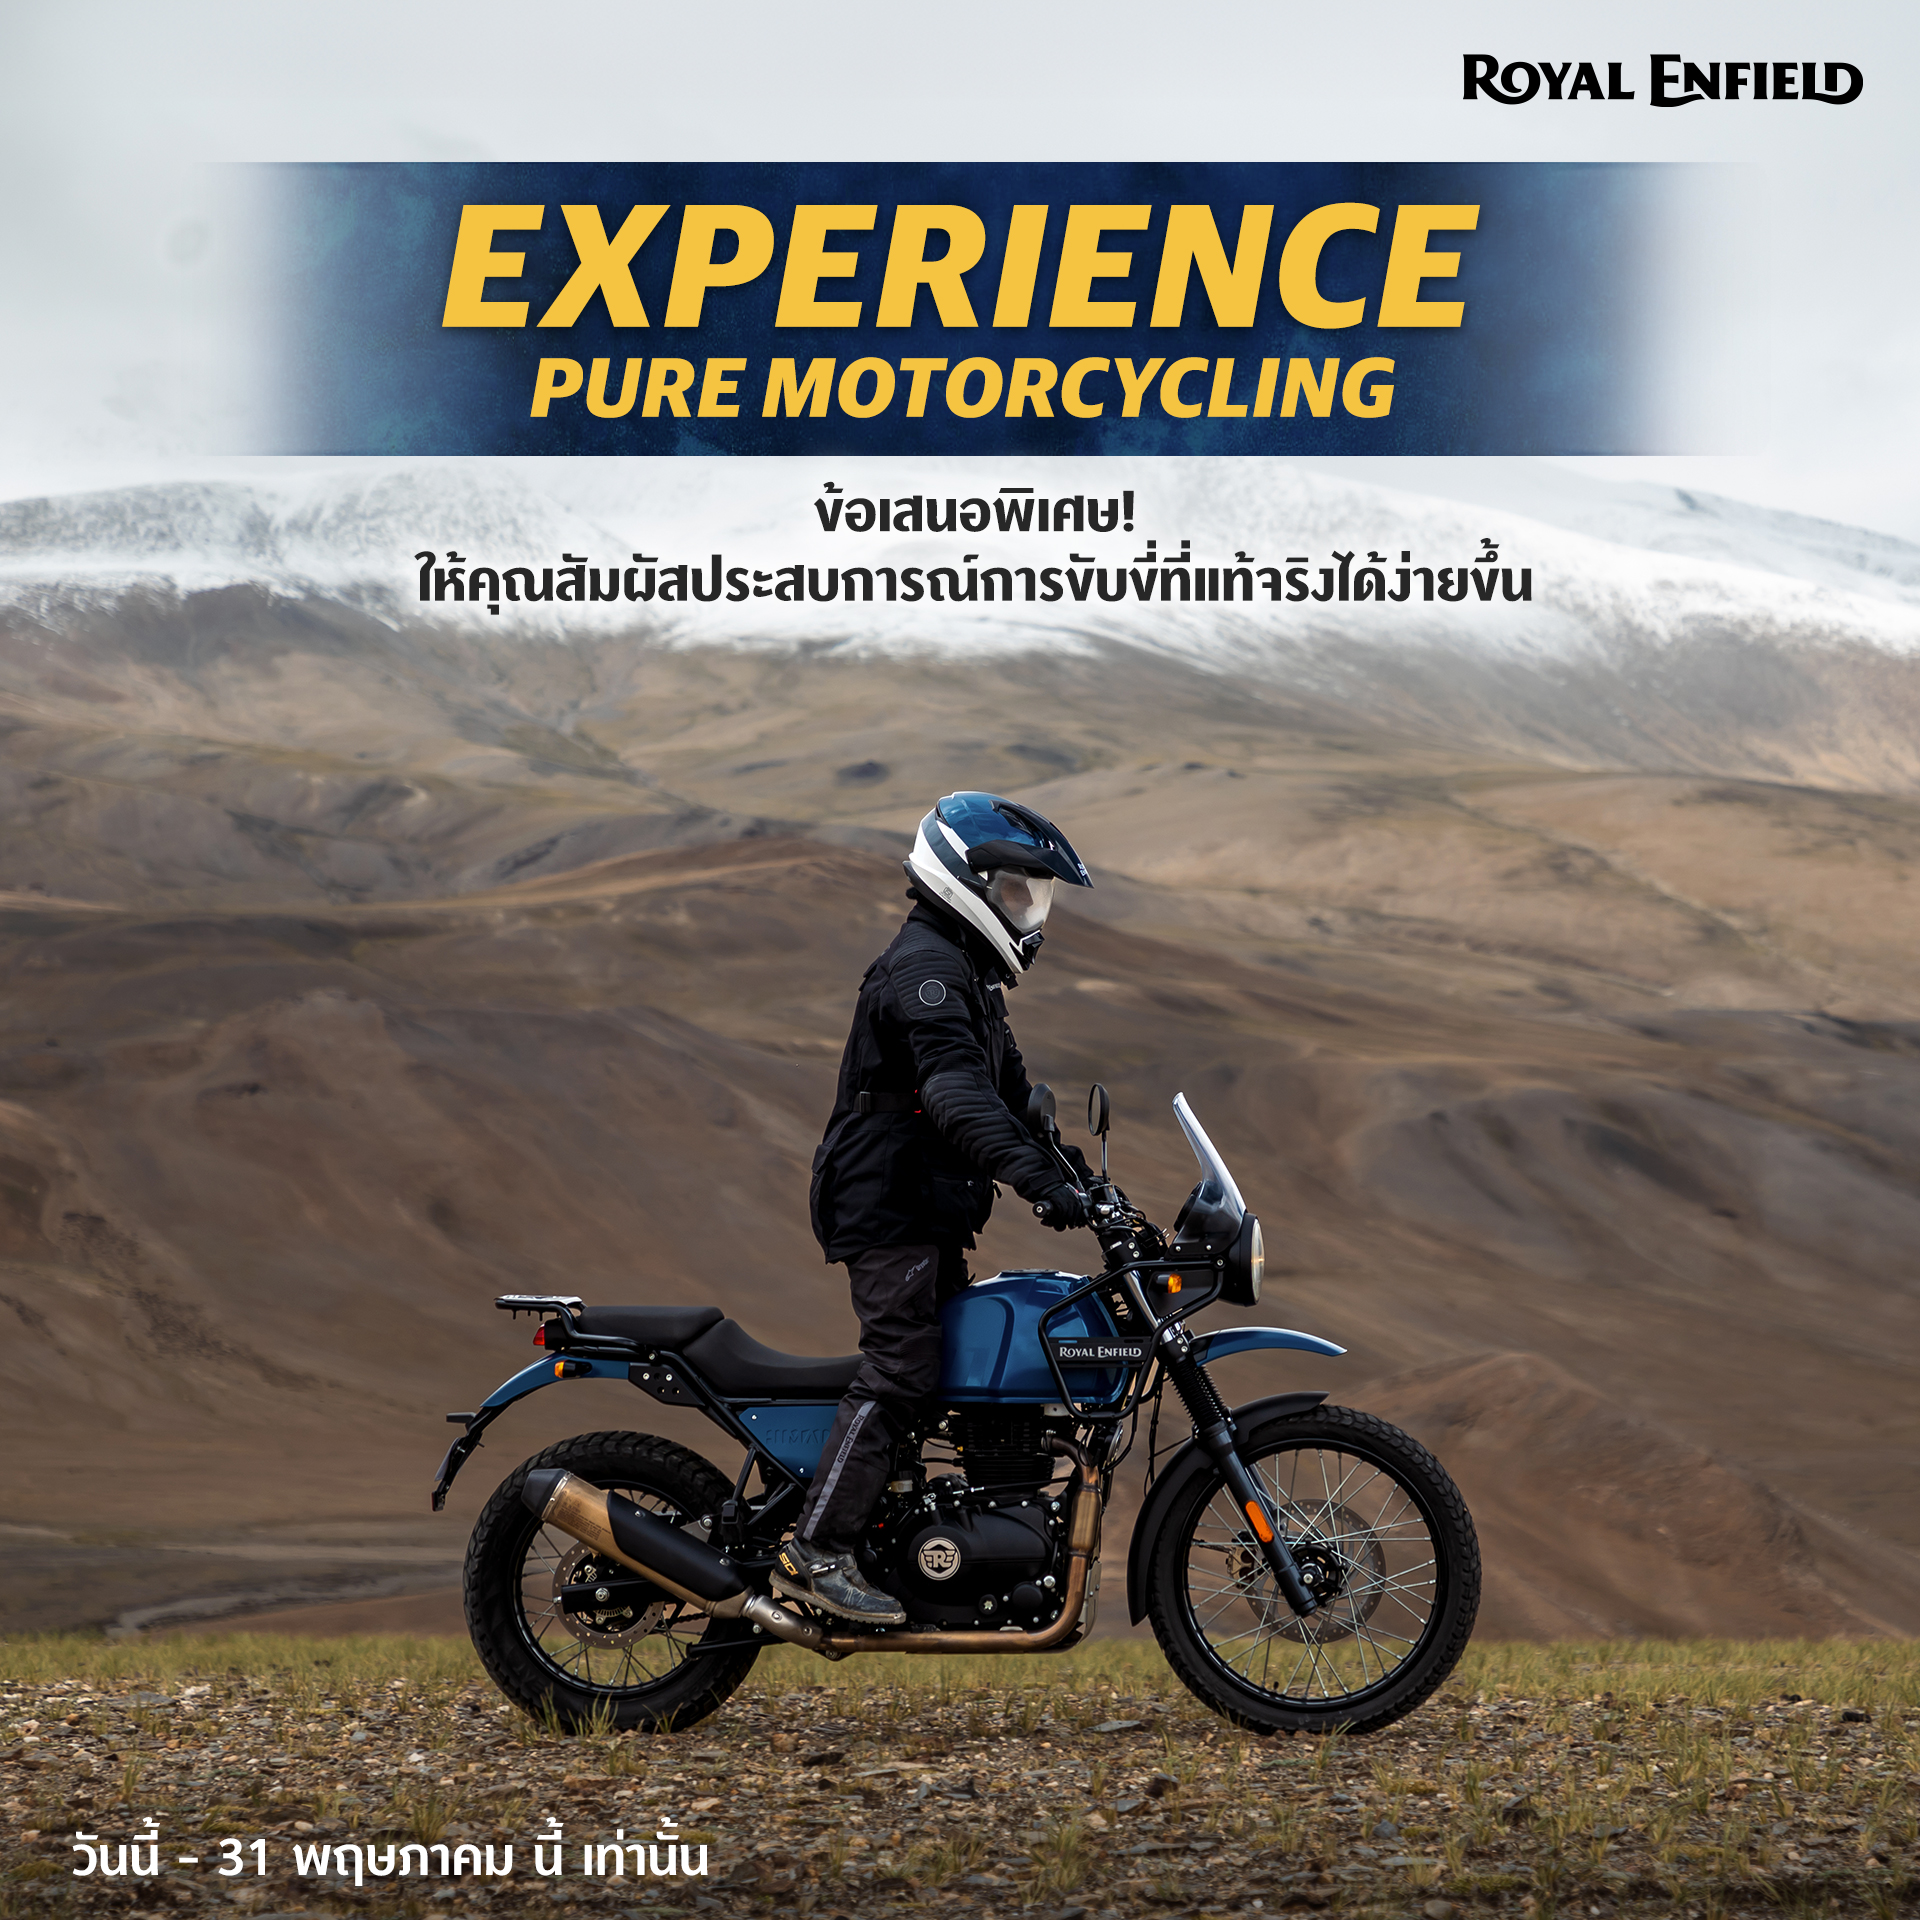 Royal Enfield Experience Pure Motorcycling ข้อเสนอพิเศษ!! ให้คุณสัมผัสประสบการณ์ขับขี่ที่แท้จริงได้ง่ายขึ้น